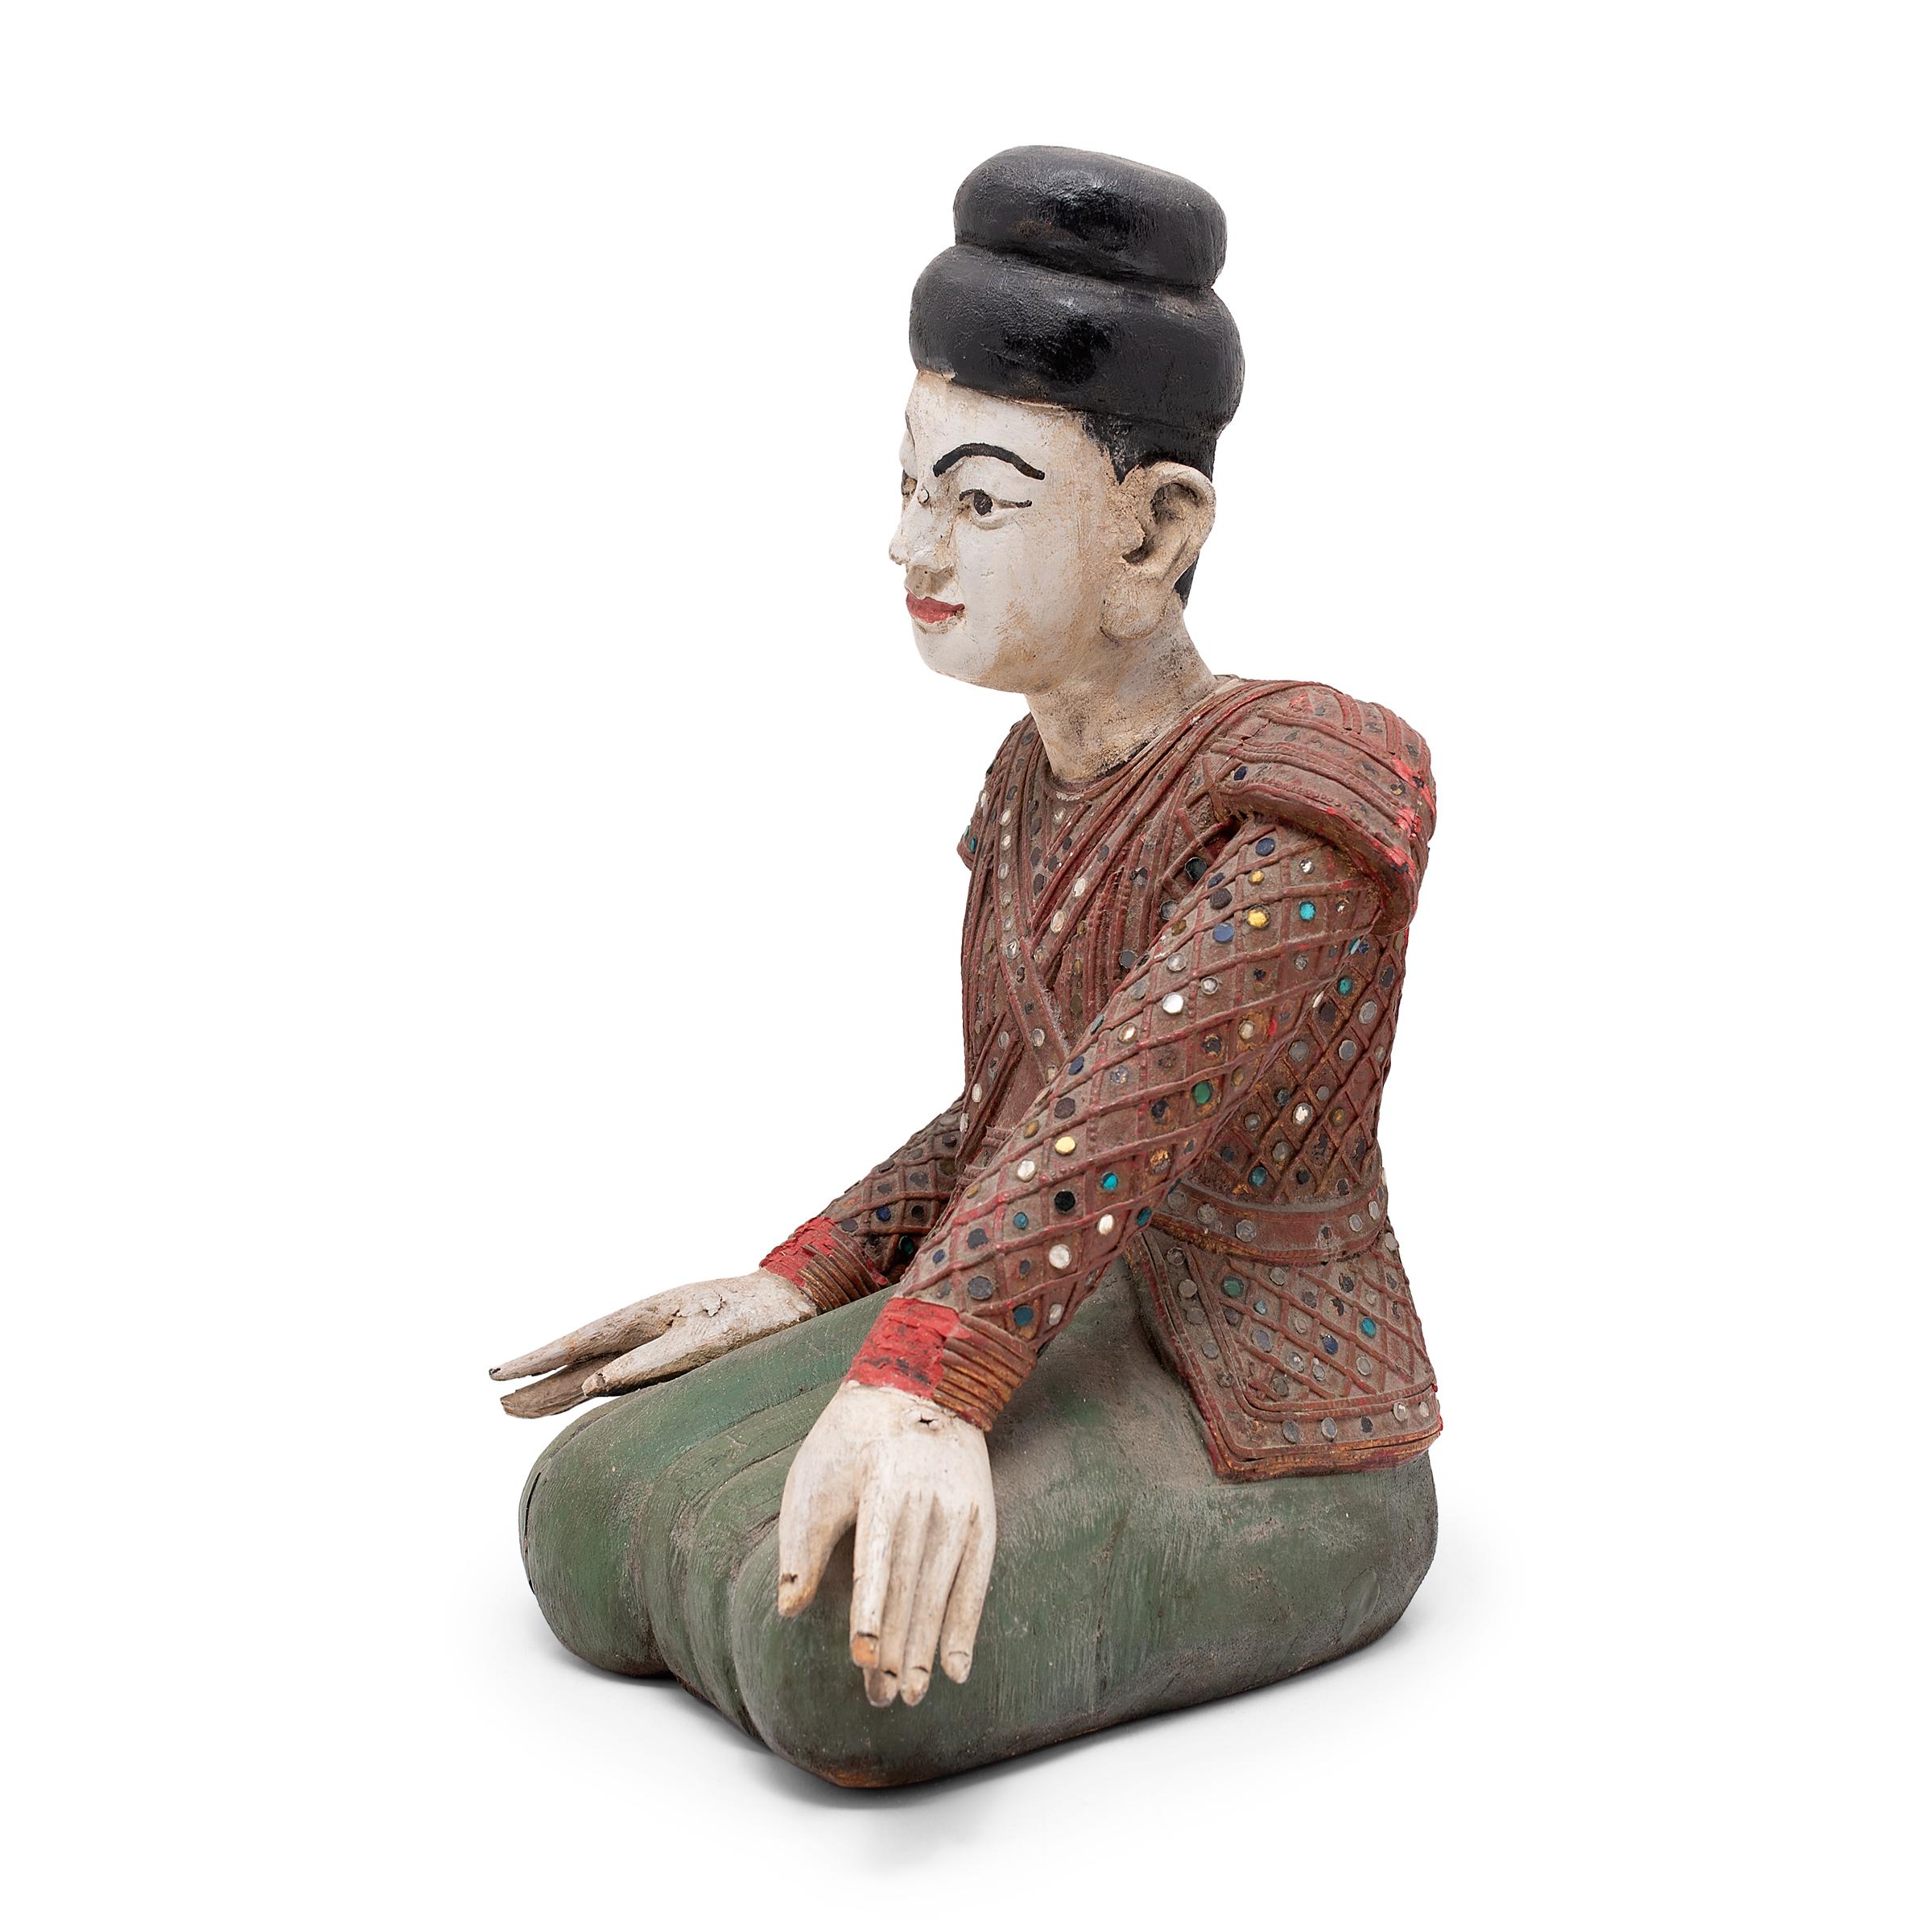 Diese sitzende Figur einer thailändischen Tänzerin stammt aus dem frühen 20. Jahrhundert und ist ein fantastisches Beispiel für südostasiatische Statuen. Die Figur besteht aus polychromiertem Holz mit Lack- und Mixed-Media-Elementen und ähnelt